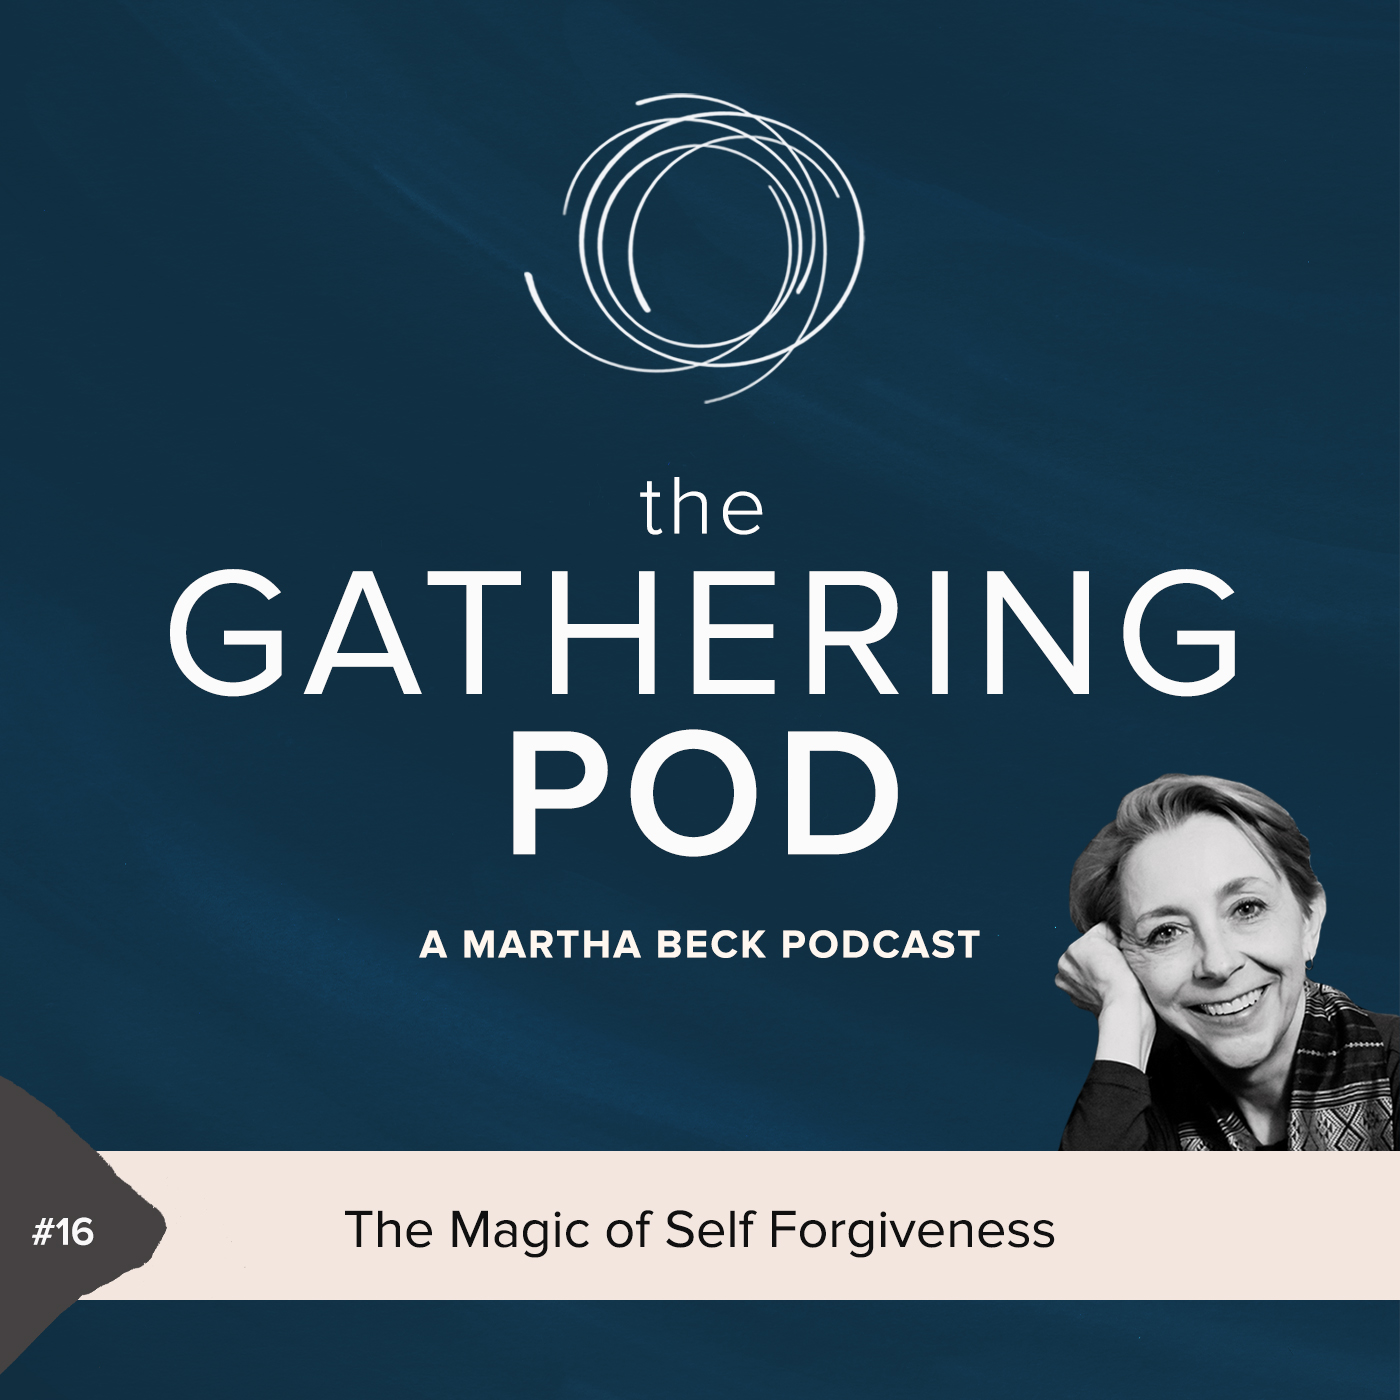 The Magic of Self Forgiveness